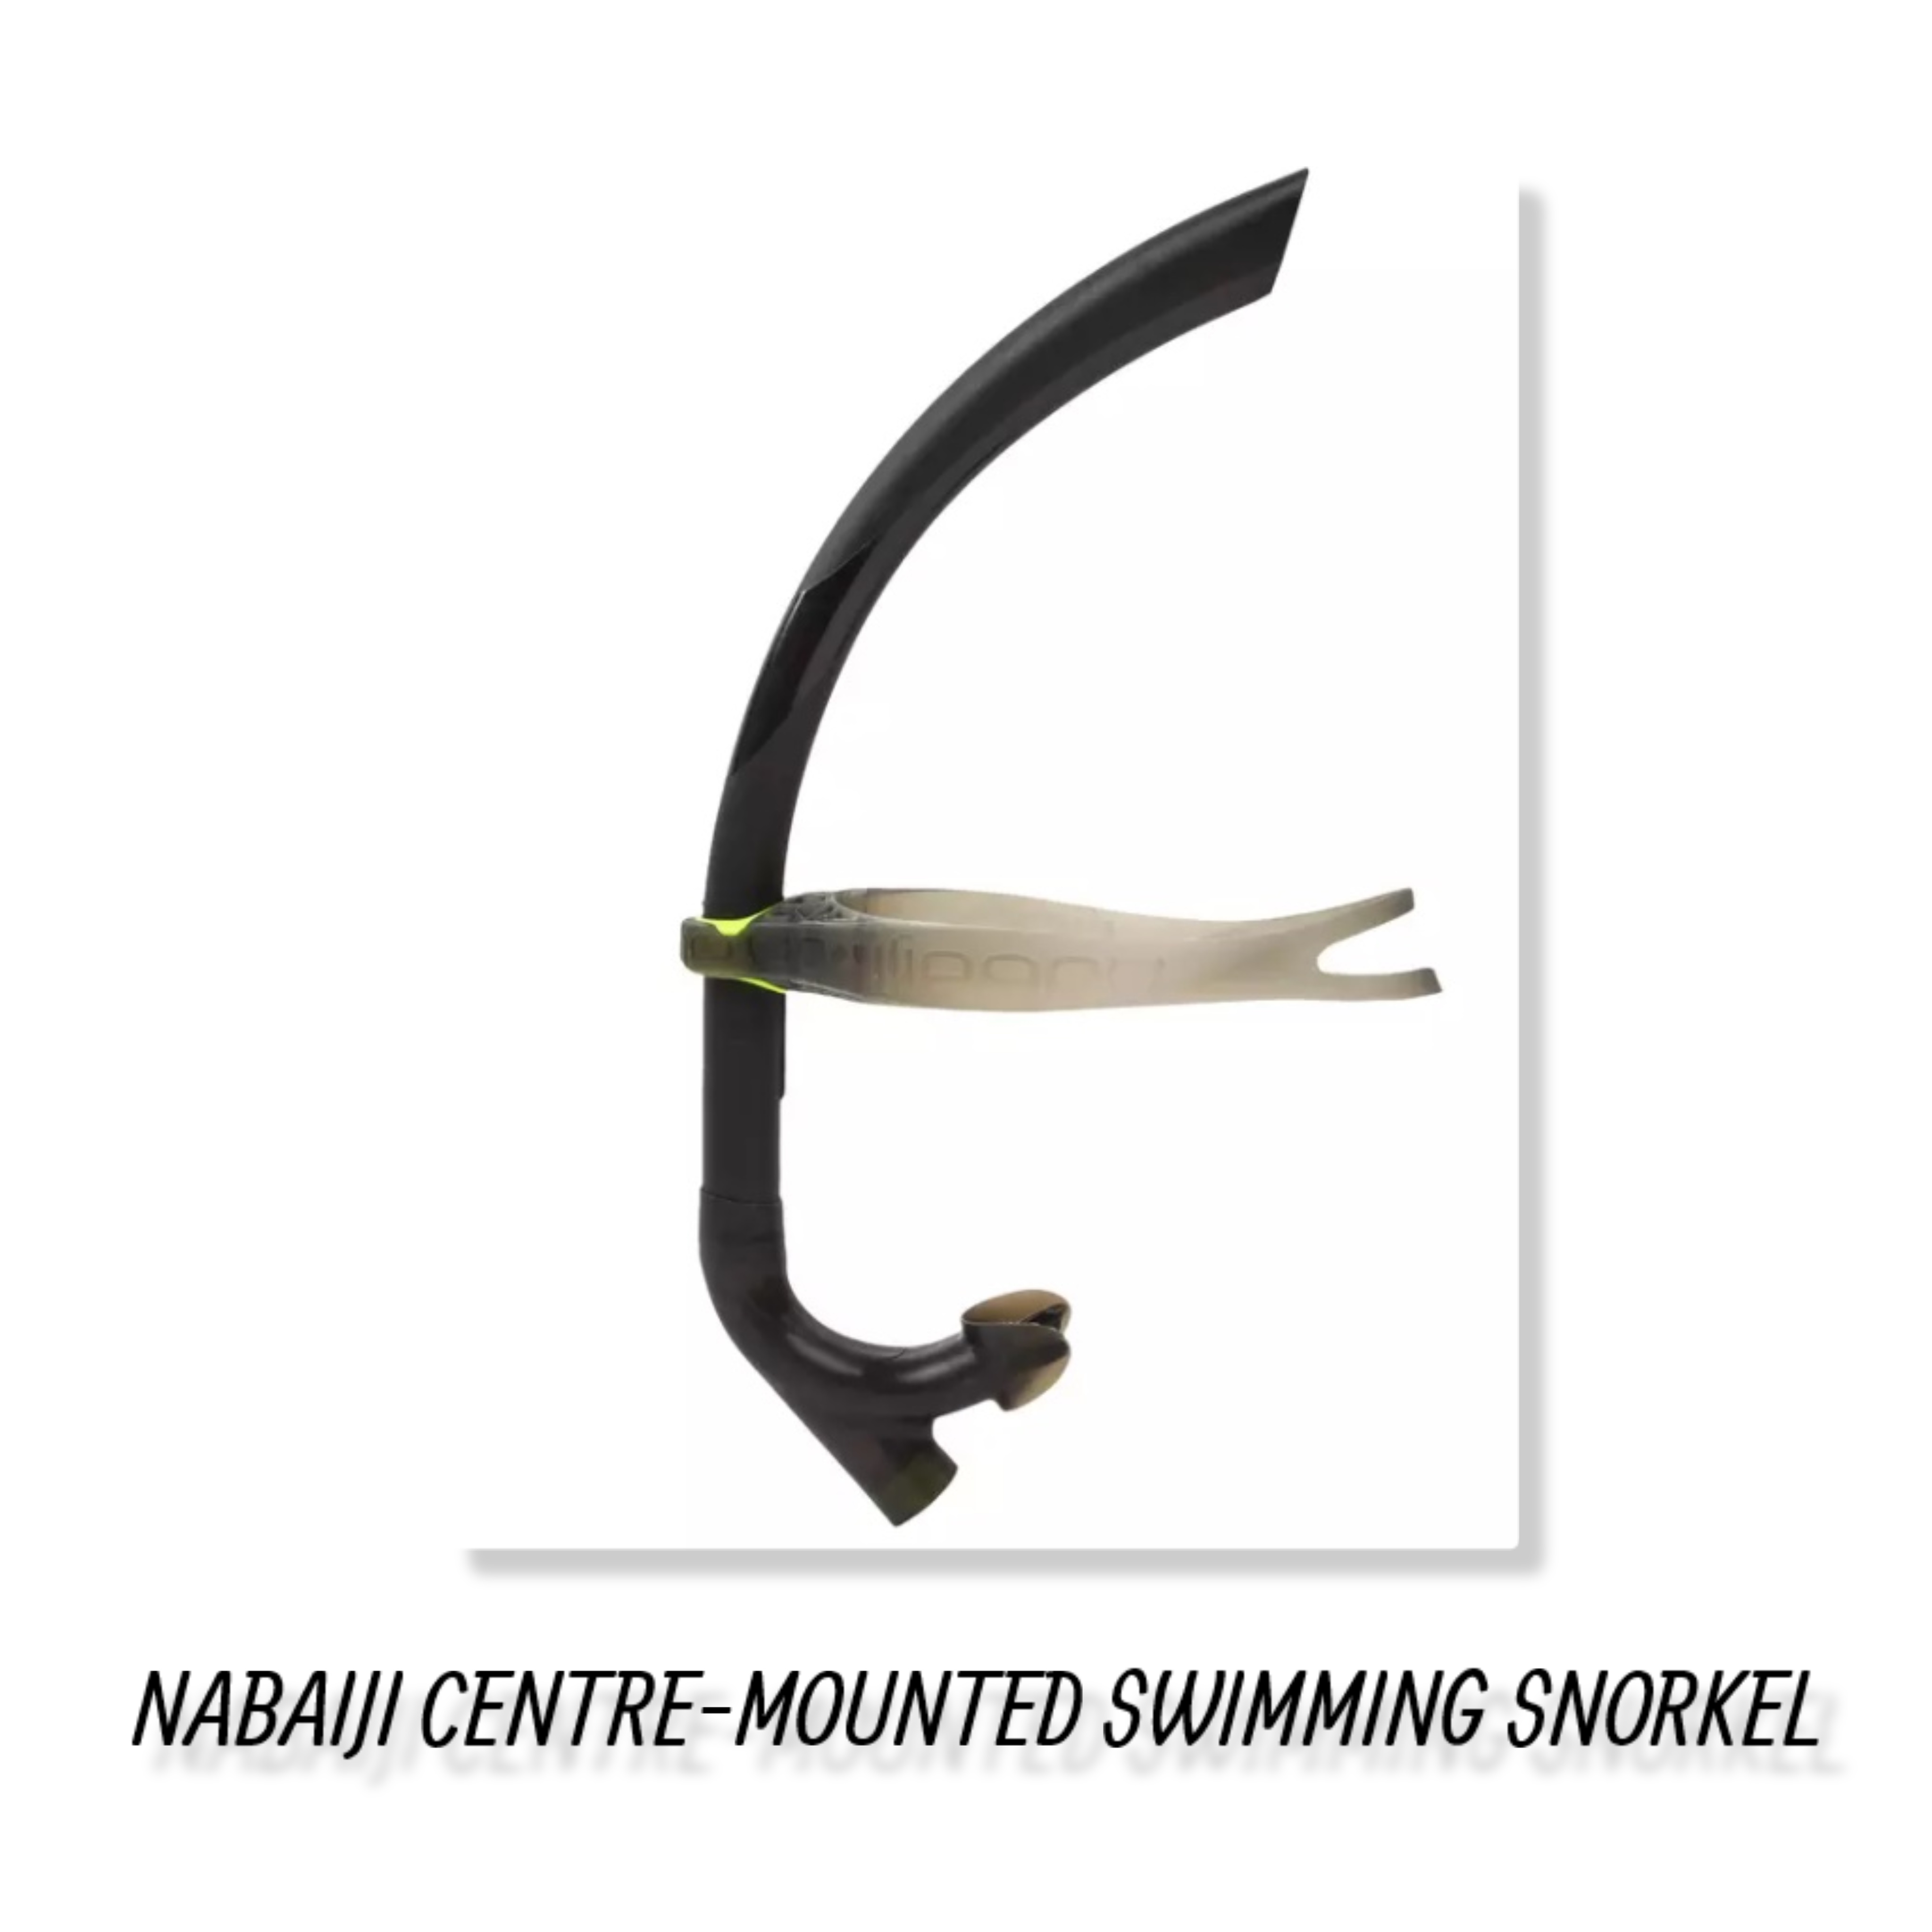 NABAIJI CENTRE-MOUNTED SWIMMING SNORKEL SIZE L ท่อหายใจแบบศูนย์กลางเพื่อการว่ายน้ำรุ่น 500 ขนาด L